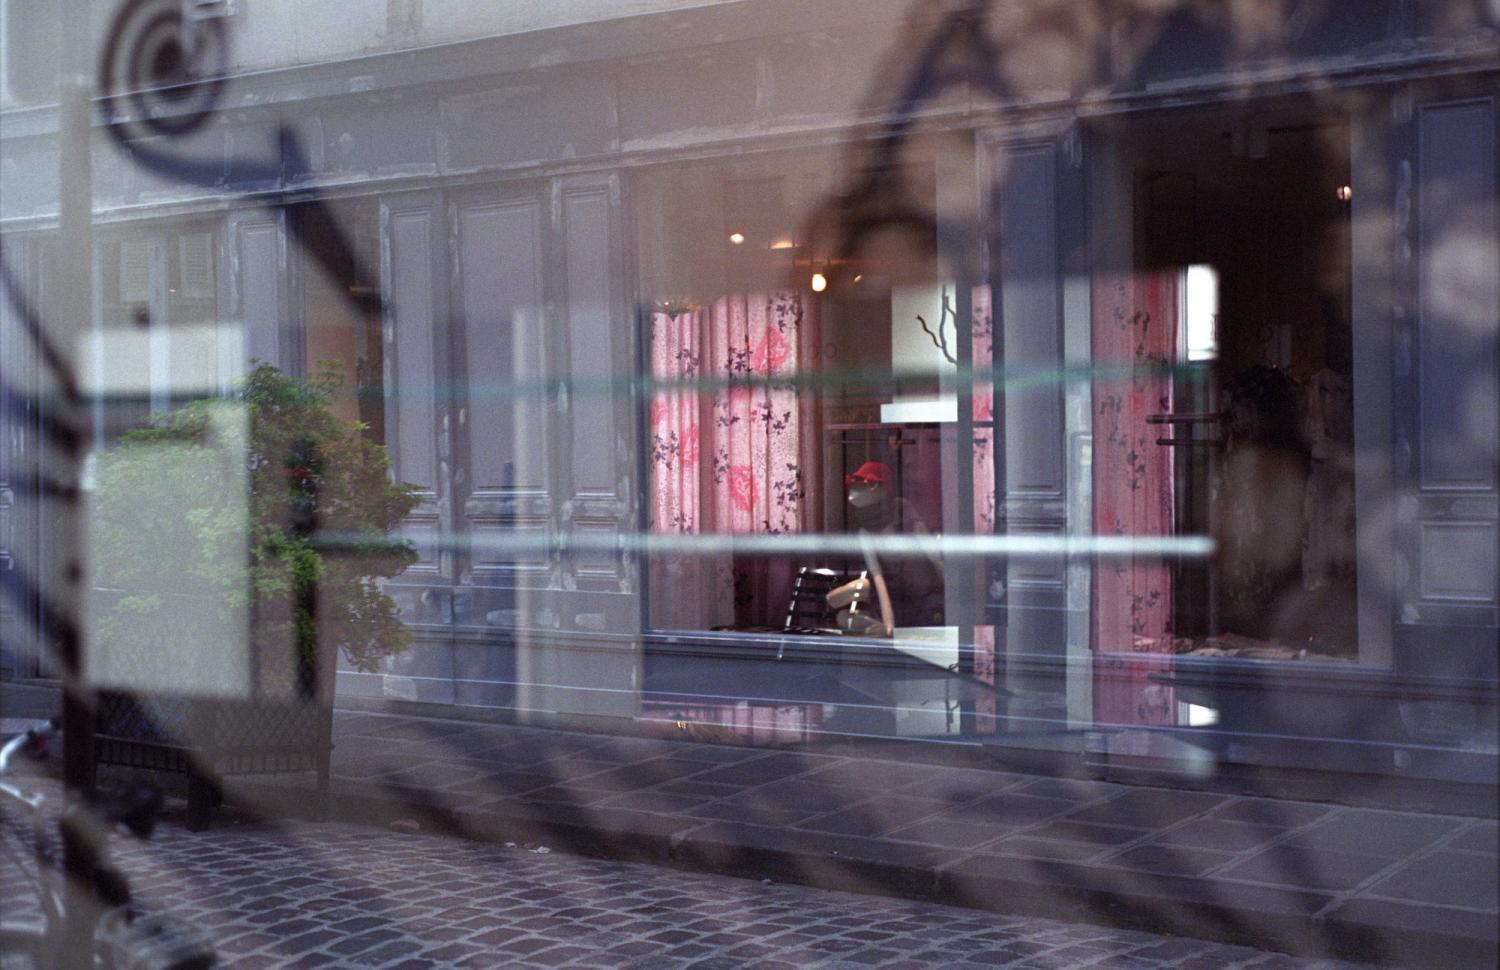 Reflets d'une vitrine aux rideaux roses. Paris, juillet 2007.